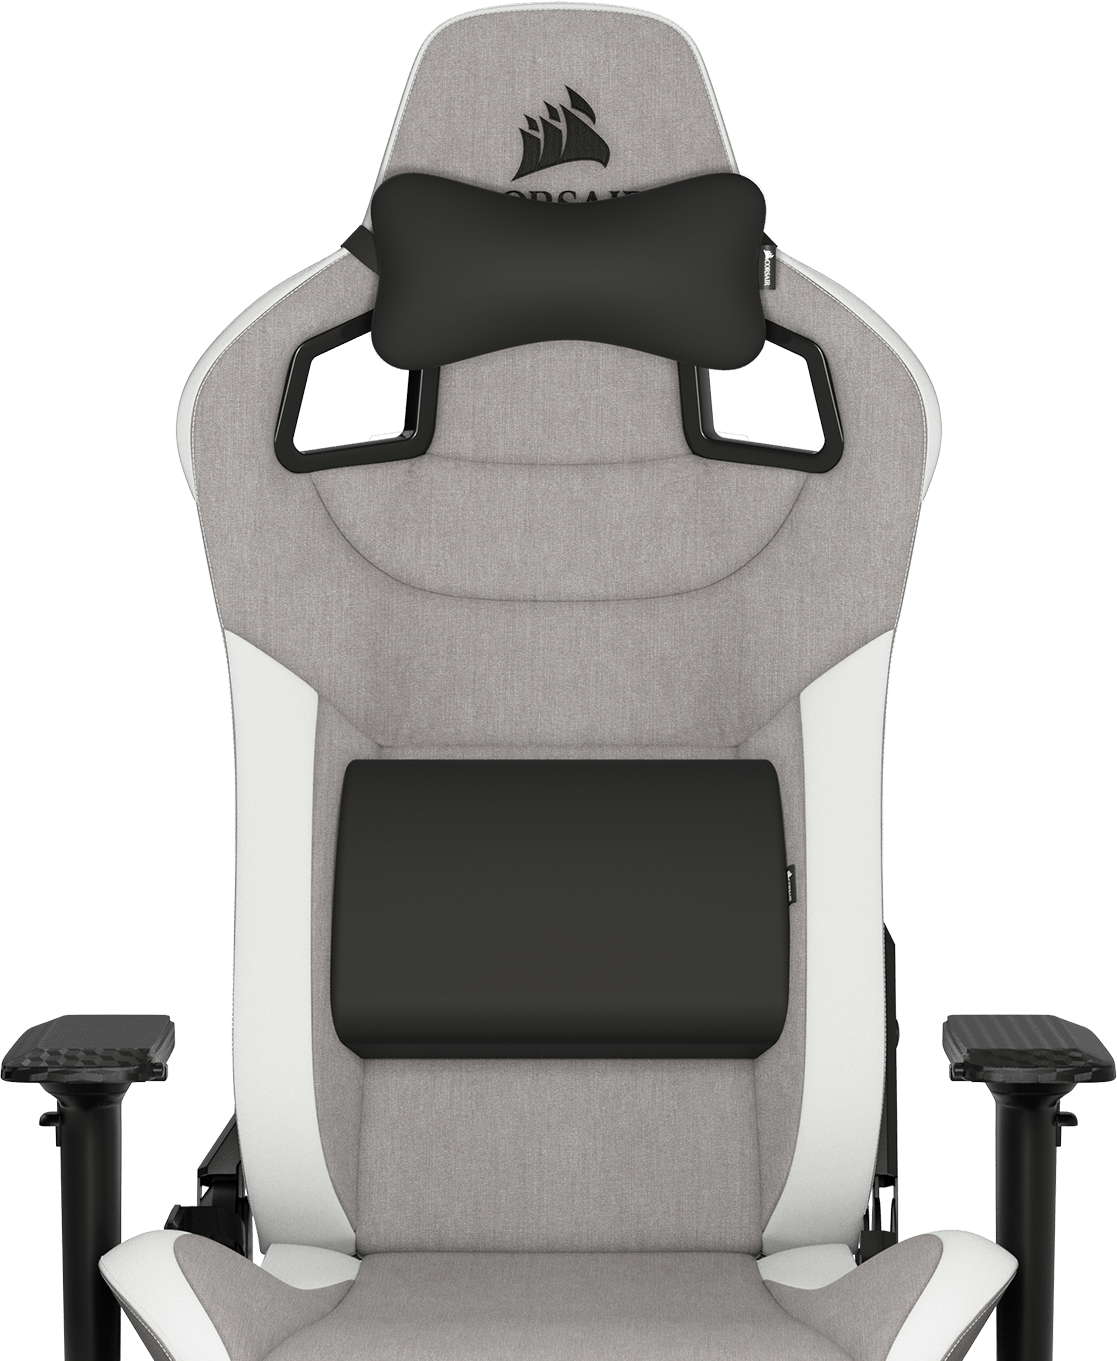 T3 RUSH Gaming Chair — Gray/White